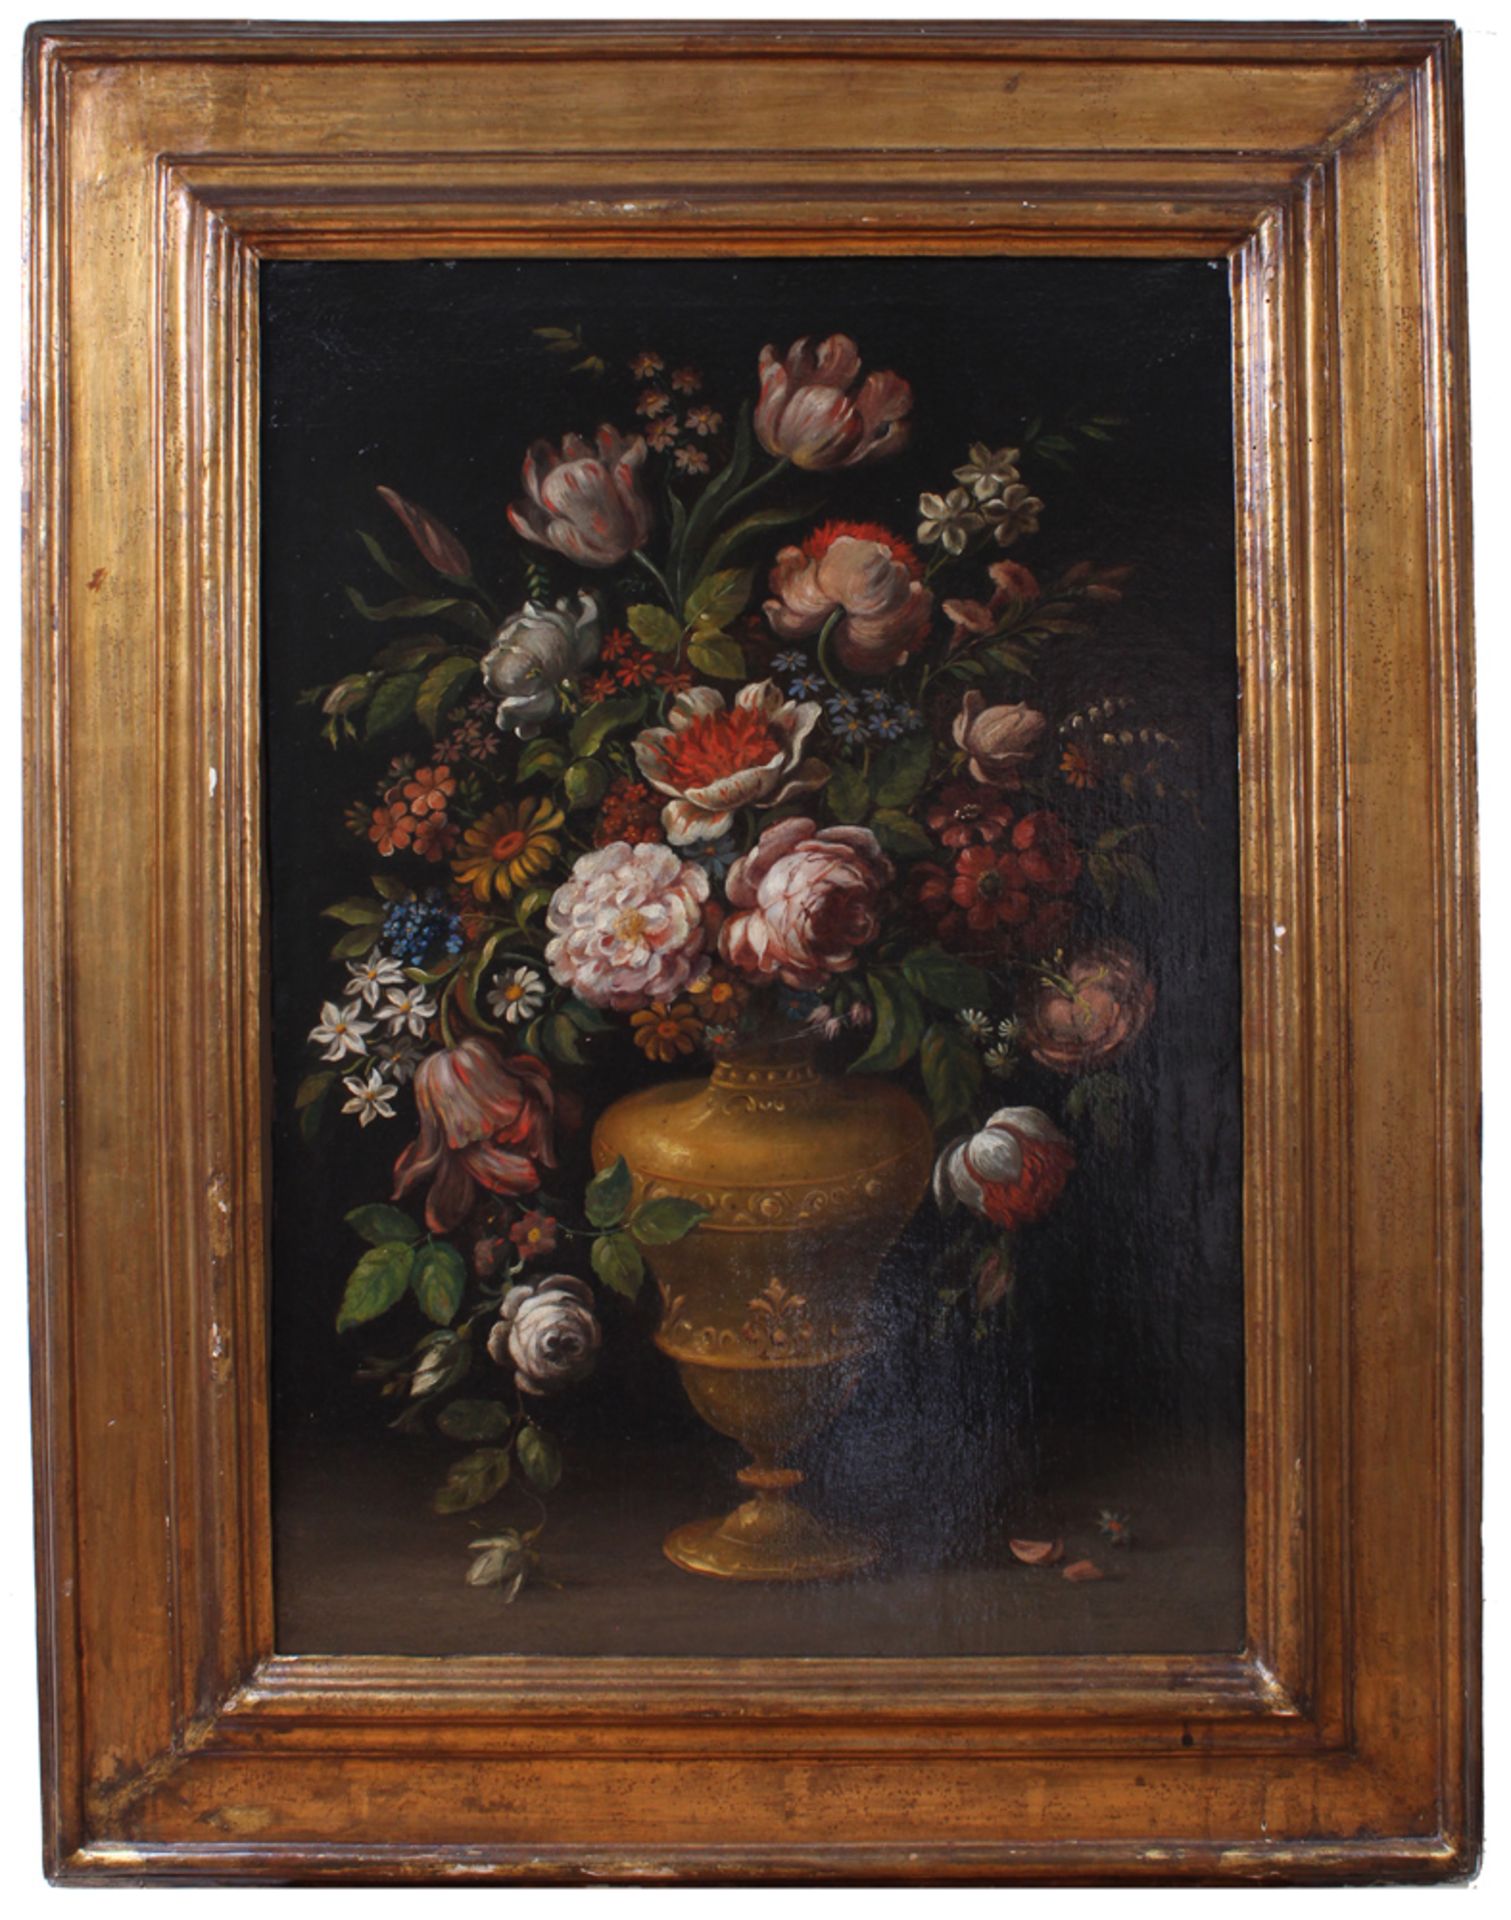 Italien, 18. Jh.Großes Stillleben. Blumenstrauß mit Rosen, Tulpen, Maiglöckchen und - Bild 2 aus 2